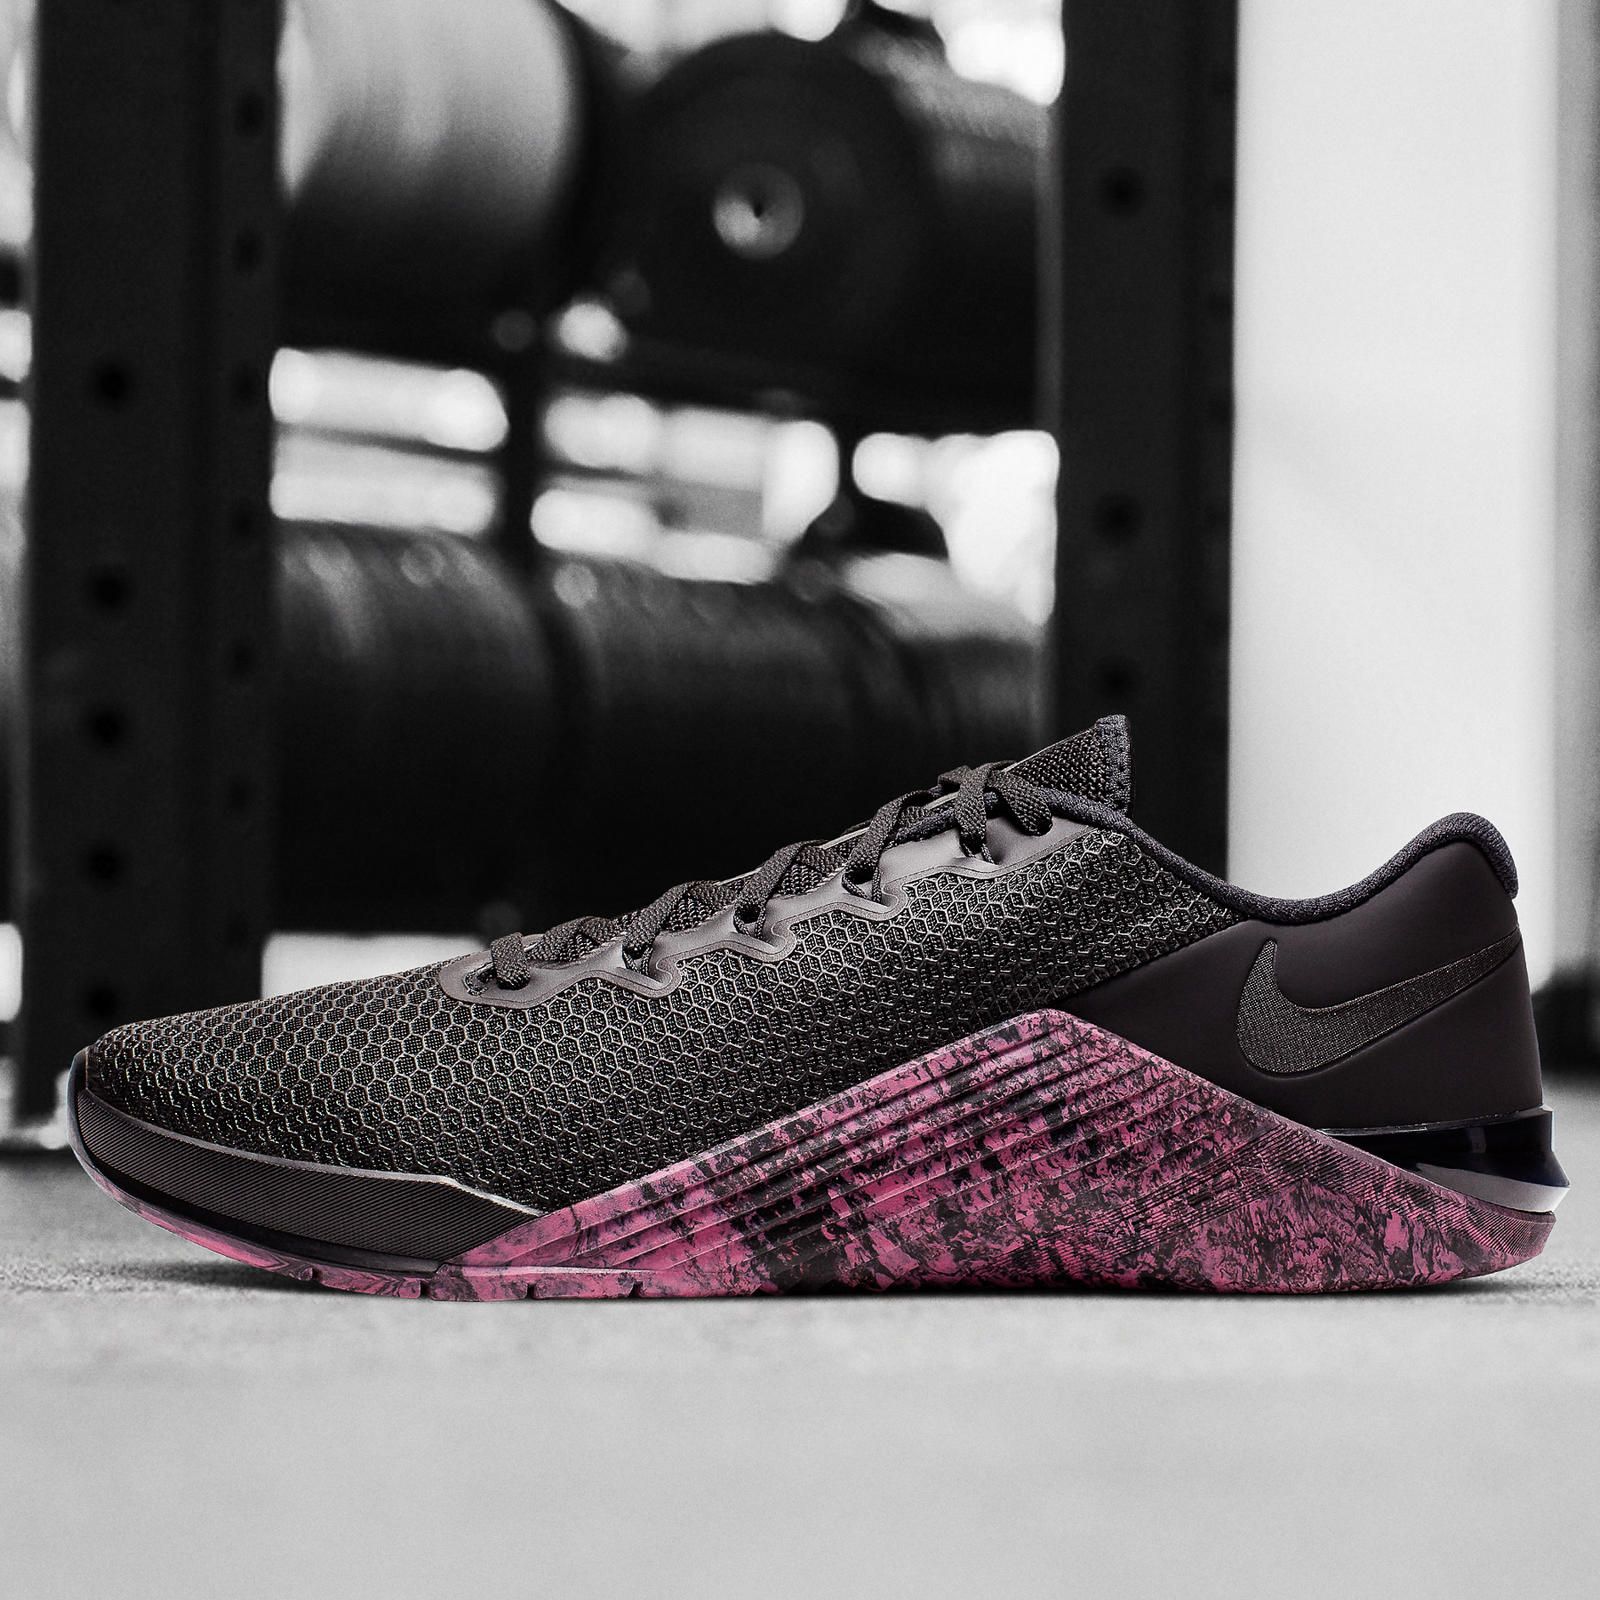 Cuáles son las mejores zapatillas Nike para CrossFit?. Nike ES